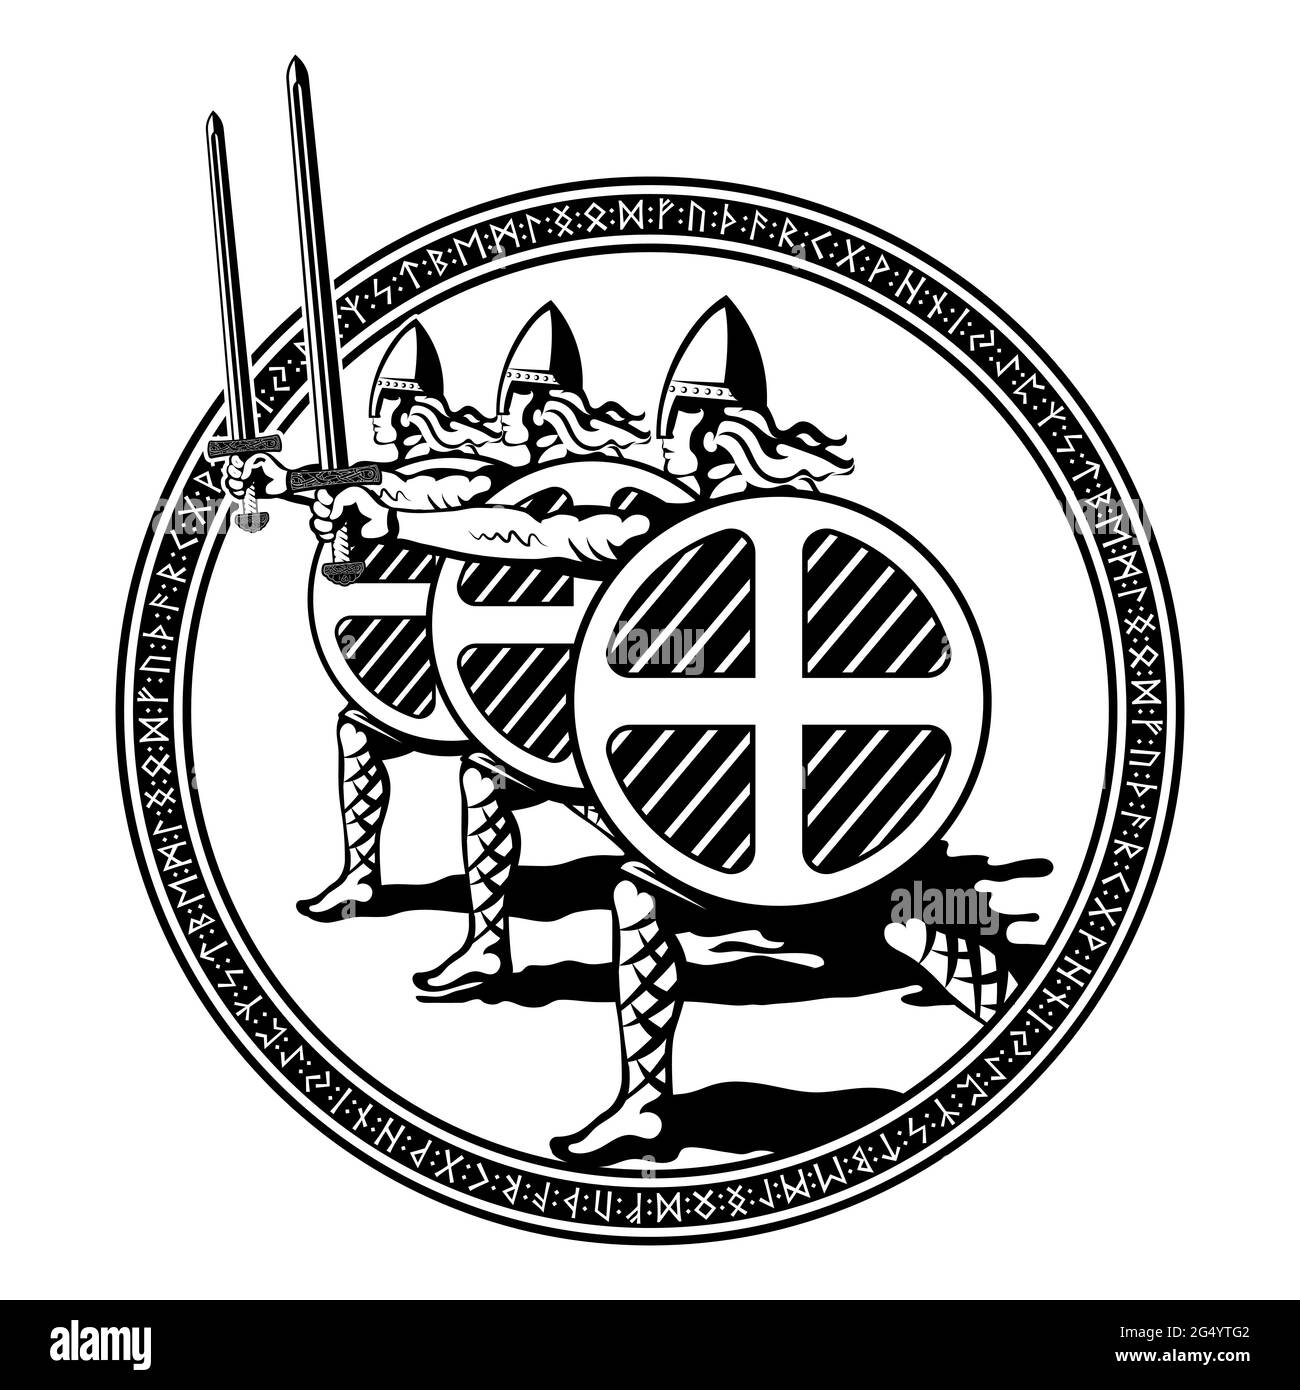 Viking, Scandinavian design. Northern warriors berserkers with swords and shields Stock Vector